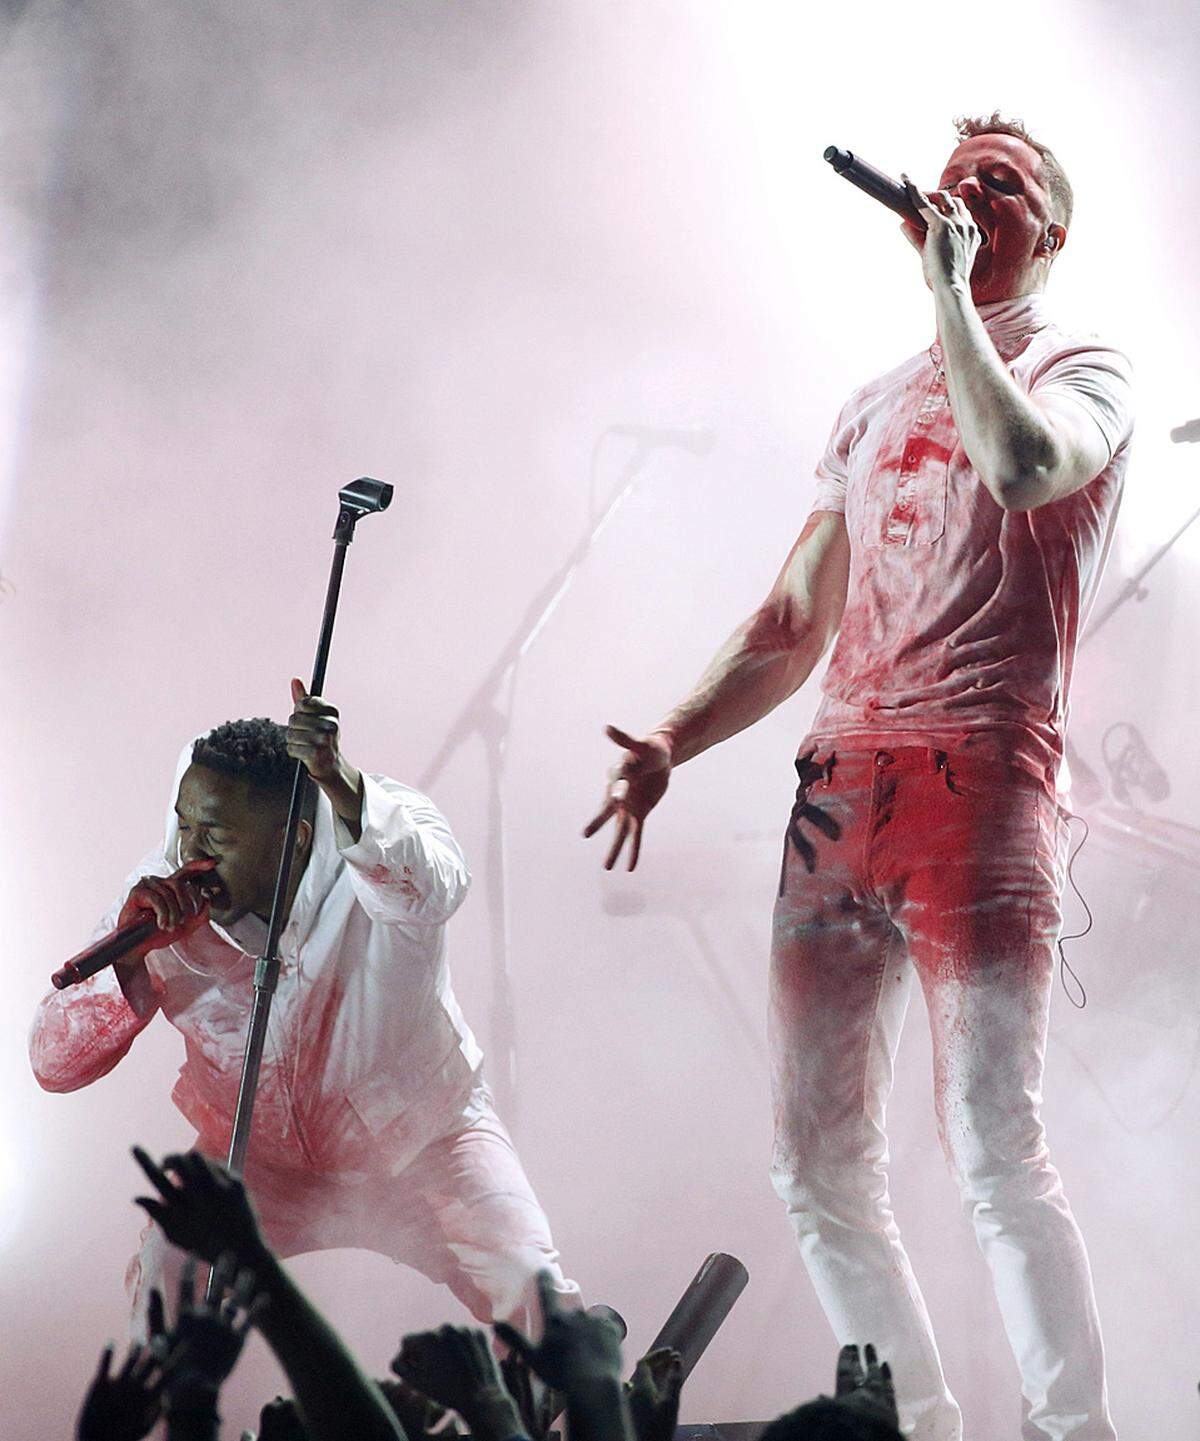 Die amerikanische Rockband Imagine Dragons performte gemeinsam mit dem Rapper Kendrick Lamar ihre Single "Radioactive", die auch als beste Rock-Darbietung ausgezeichnet wurde.